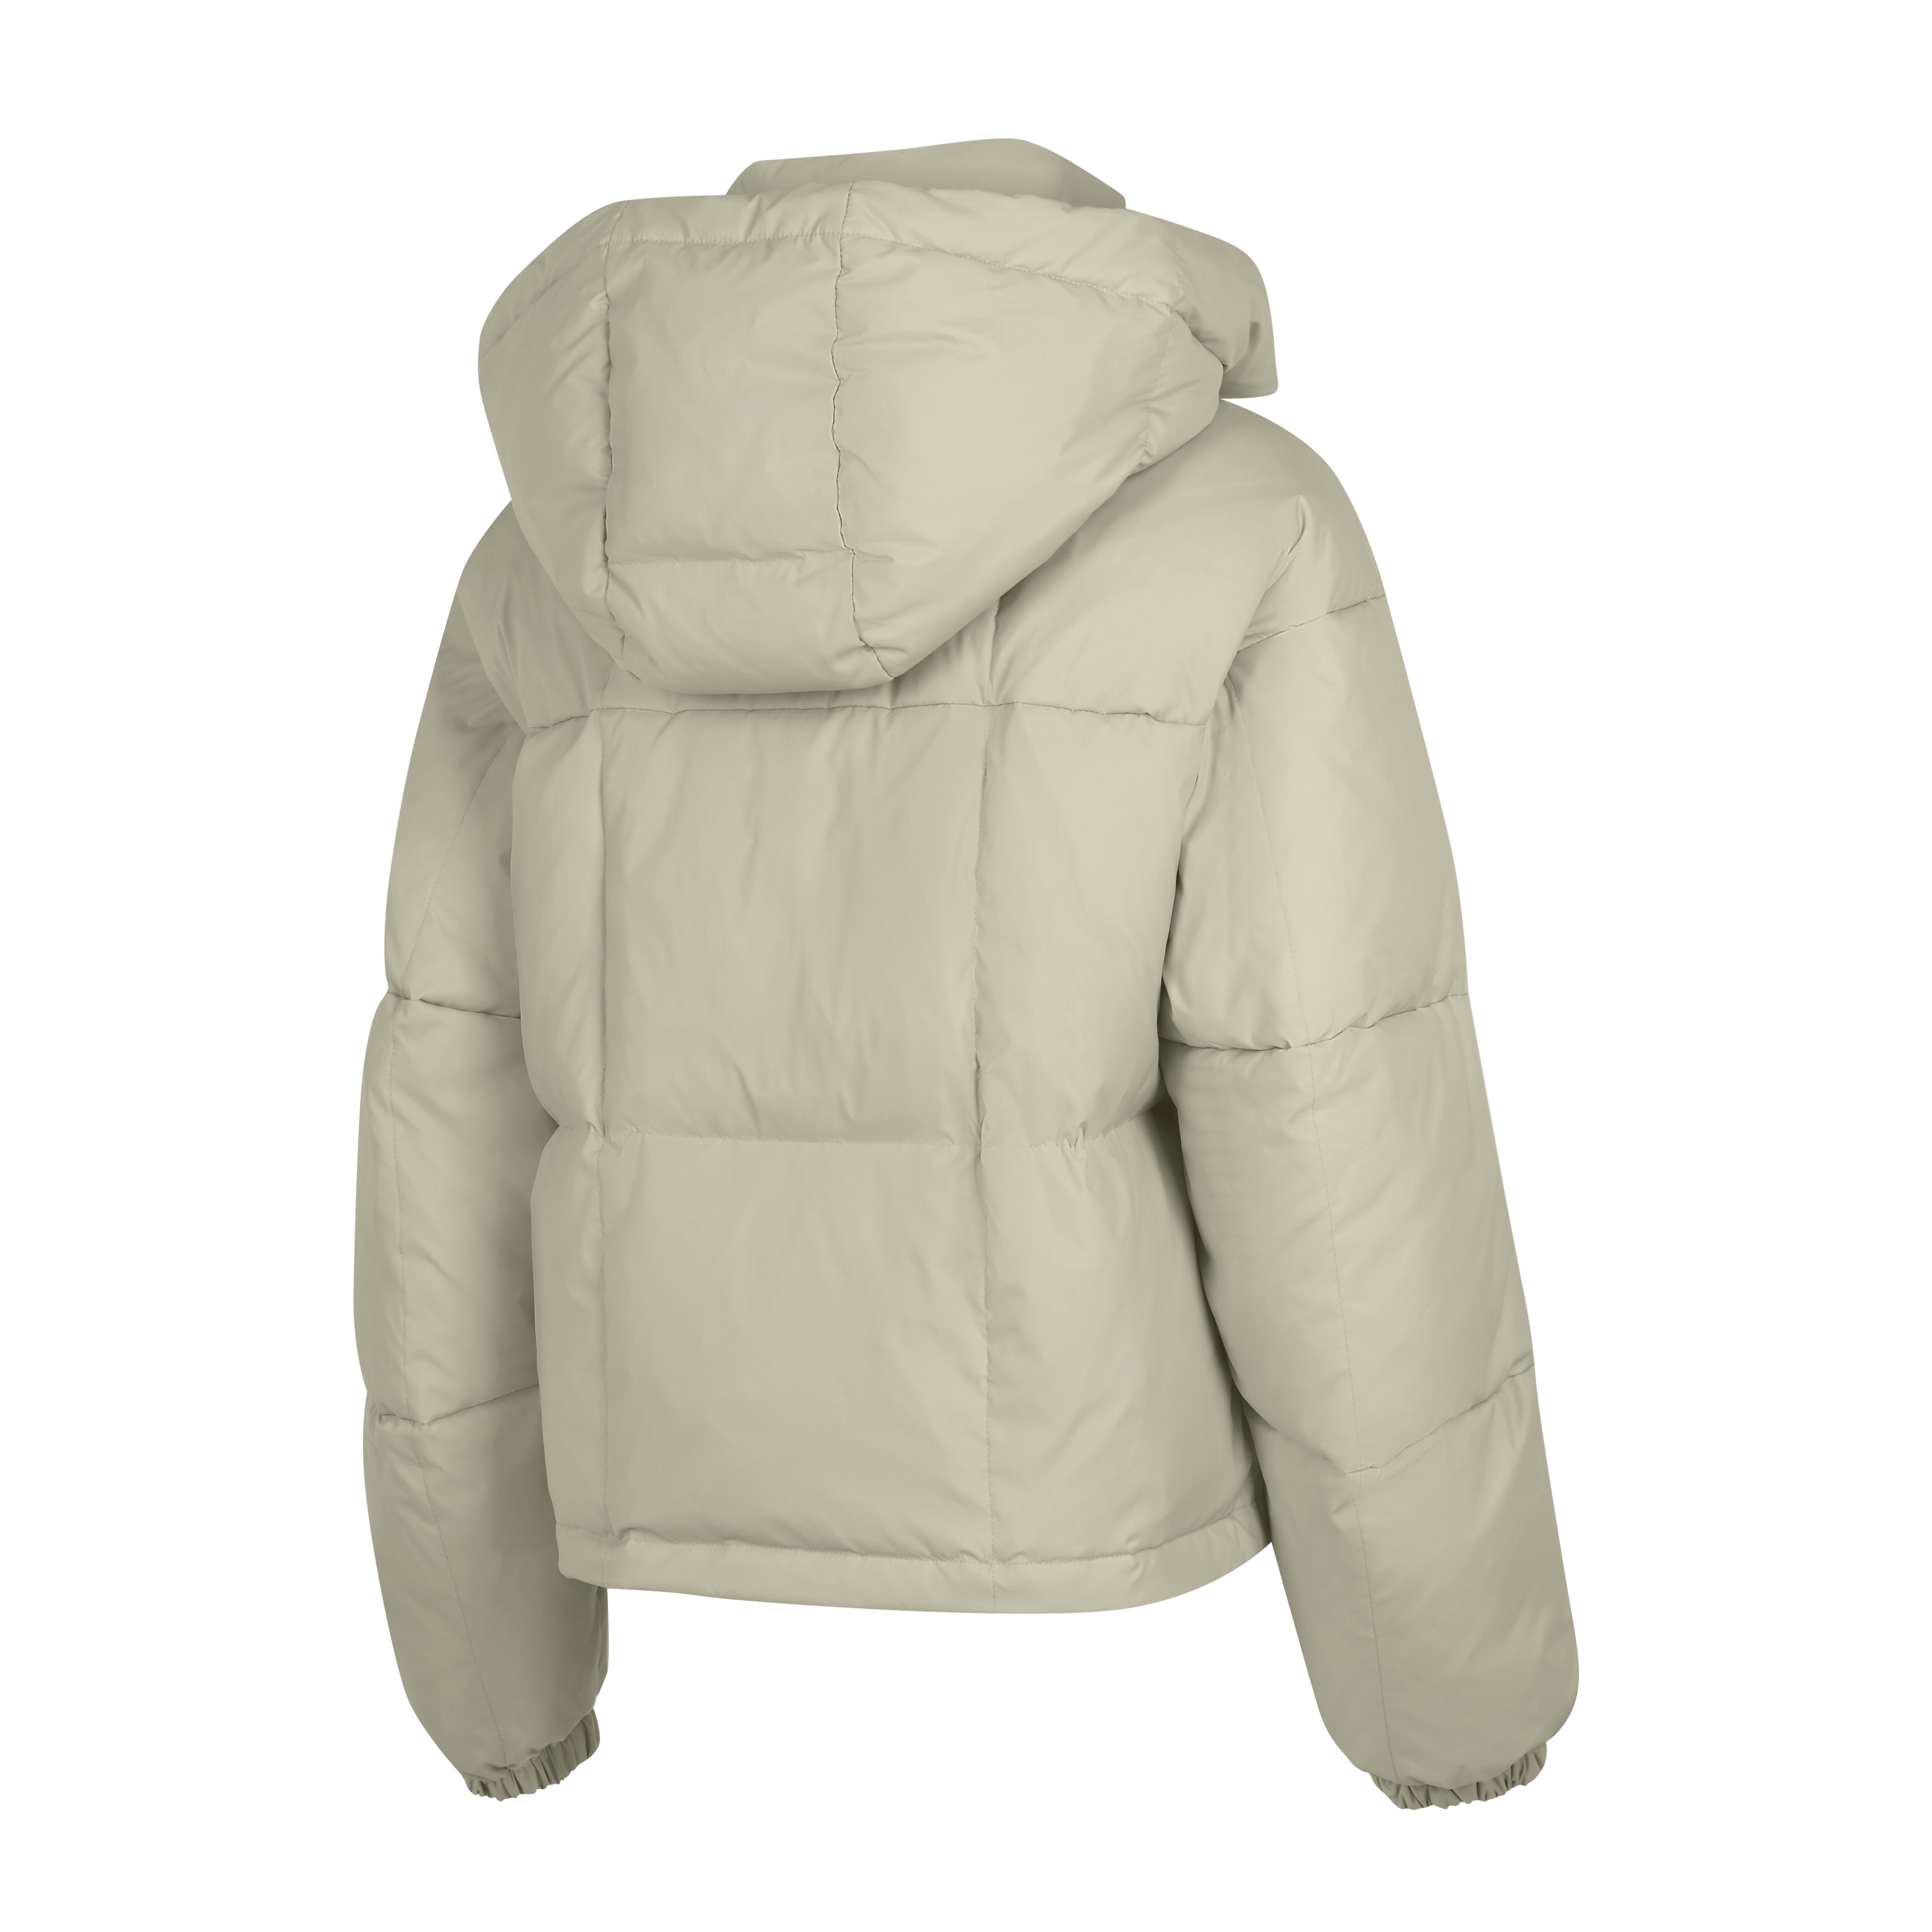 66 North Dyngja Jackets & Coats in Gray | Lyst